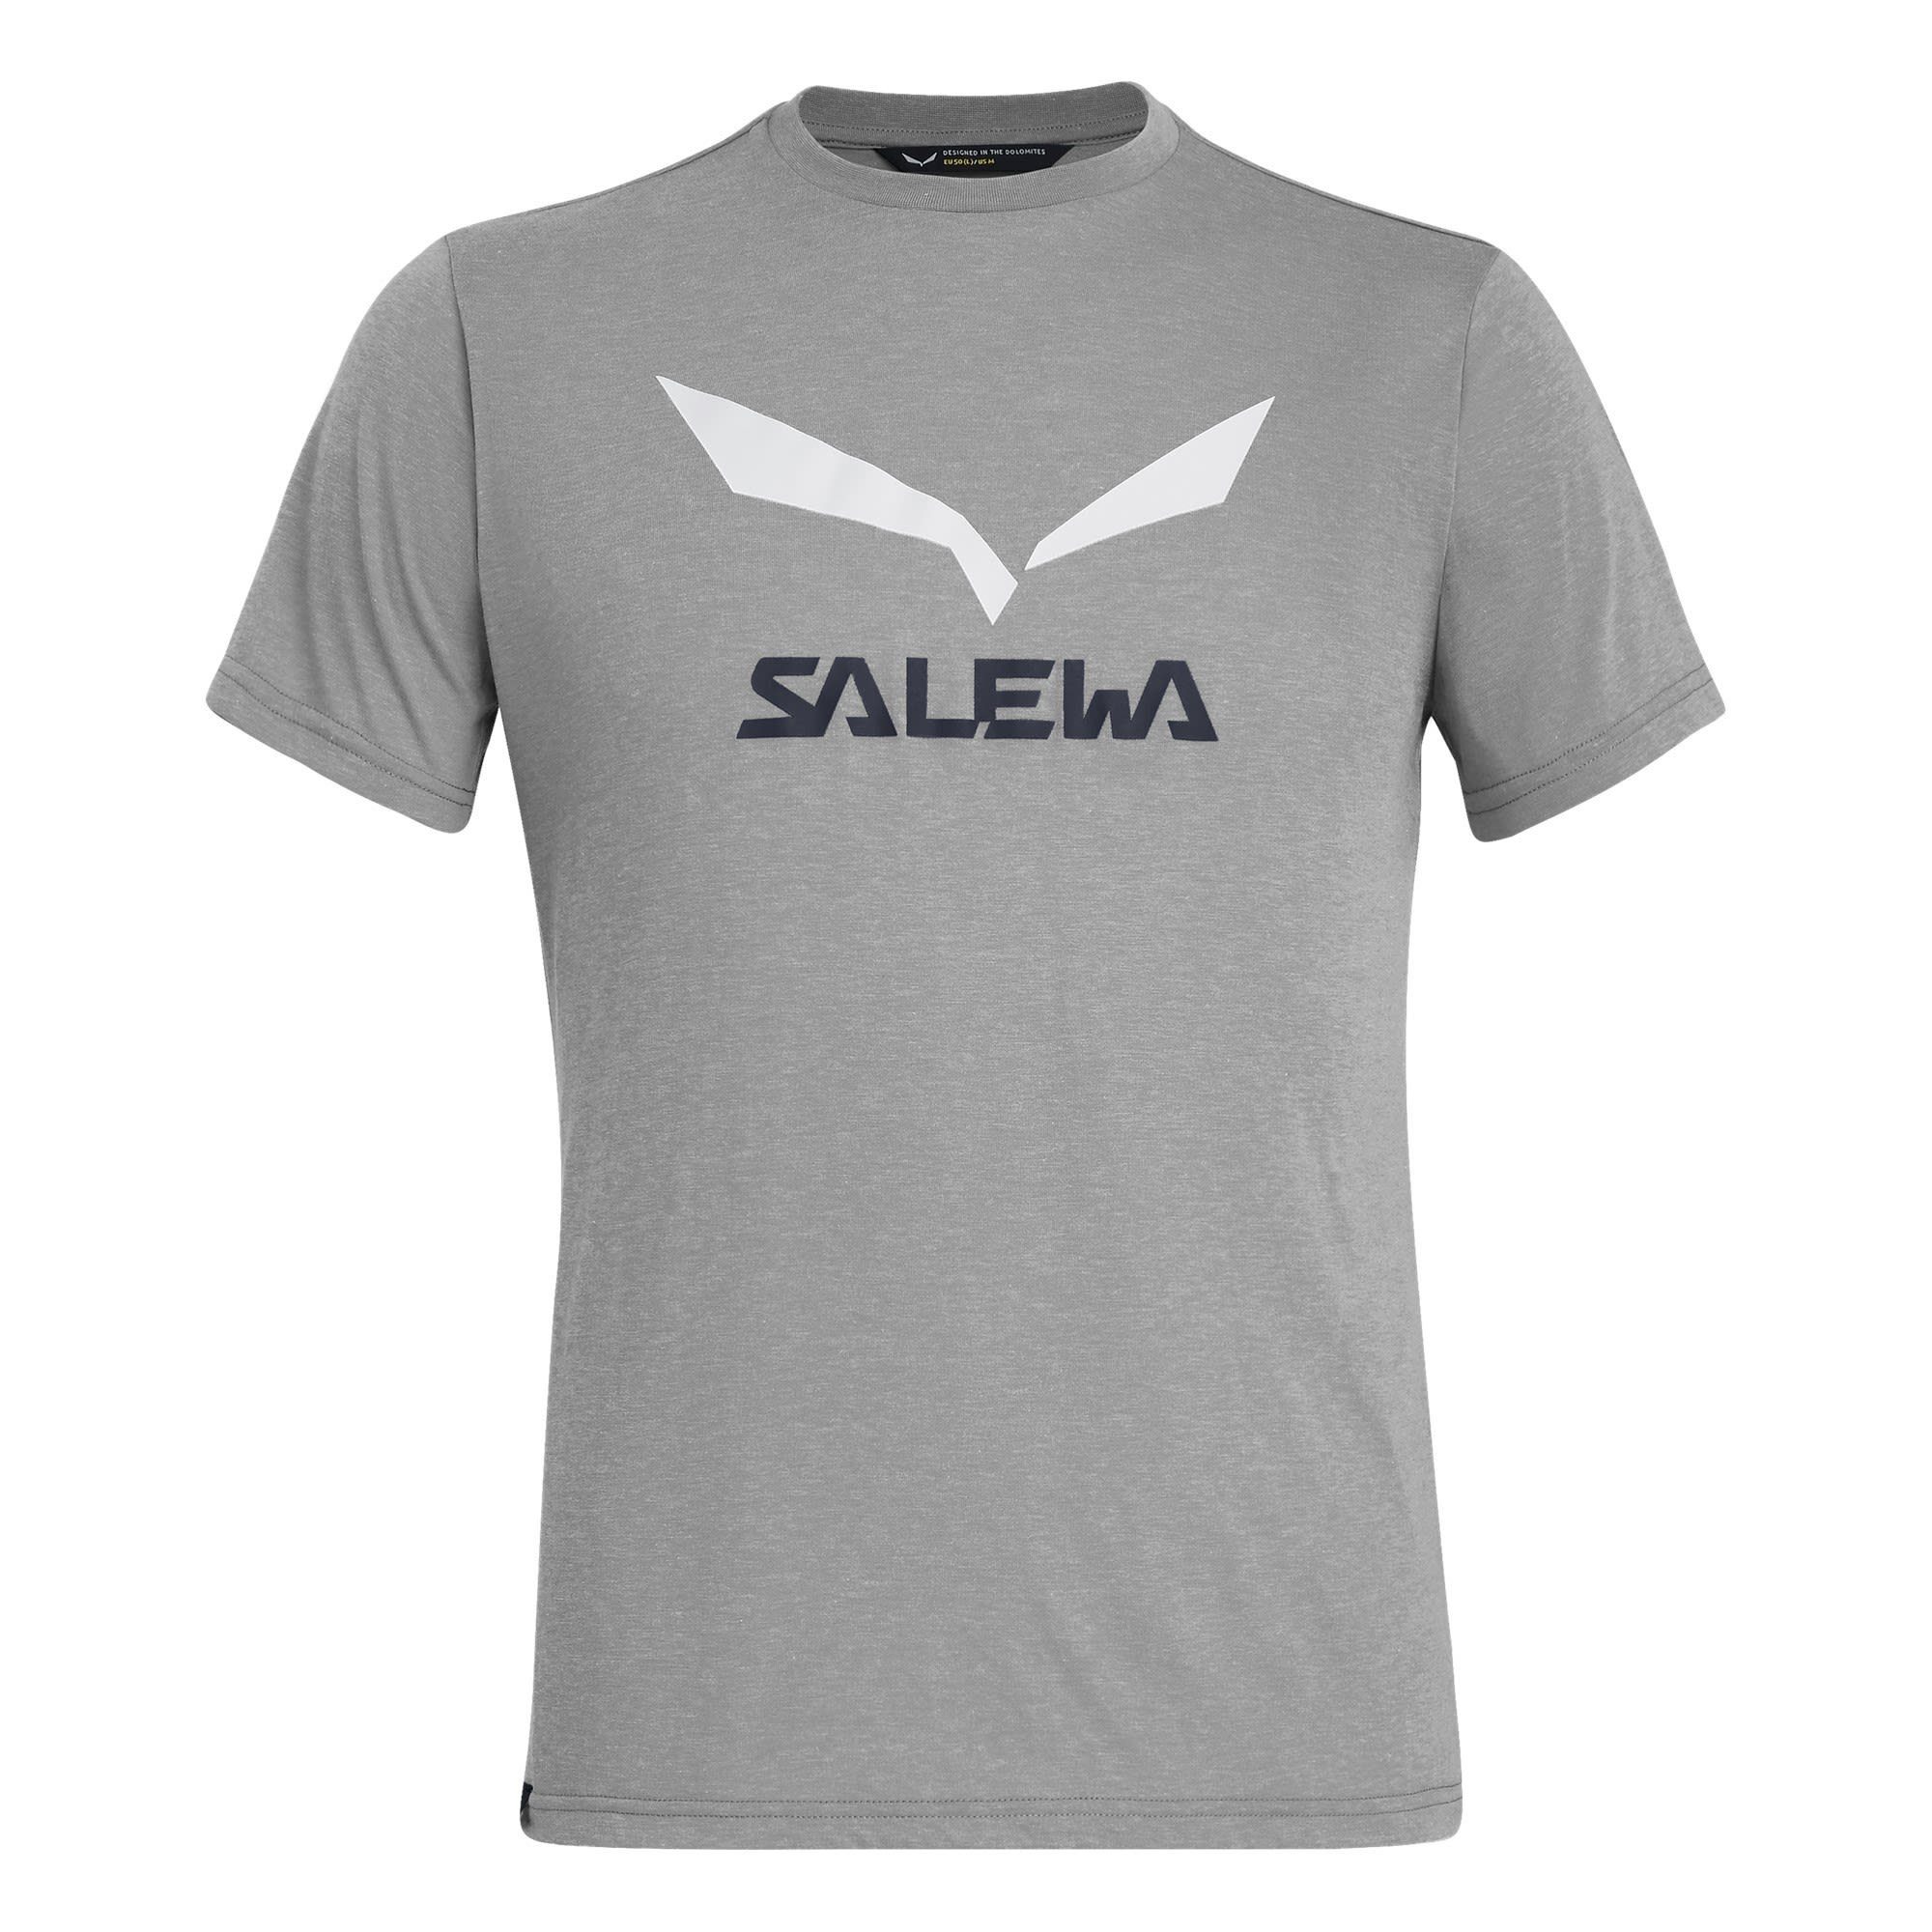 Salewa Release Grey Salewa M Melange Herren Tee Dri Solidlogo T-Shirt Heather